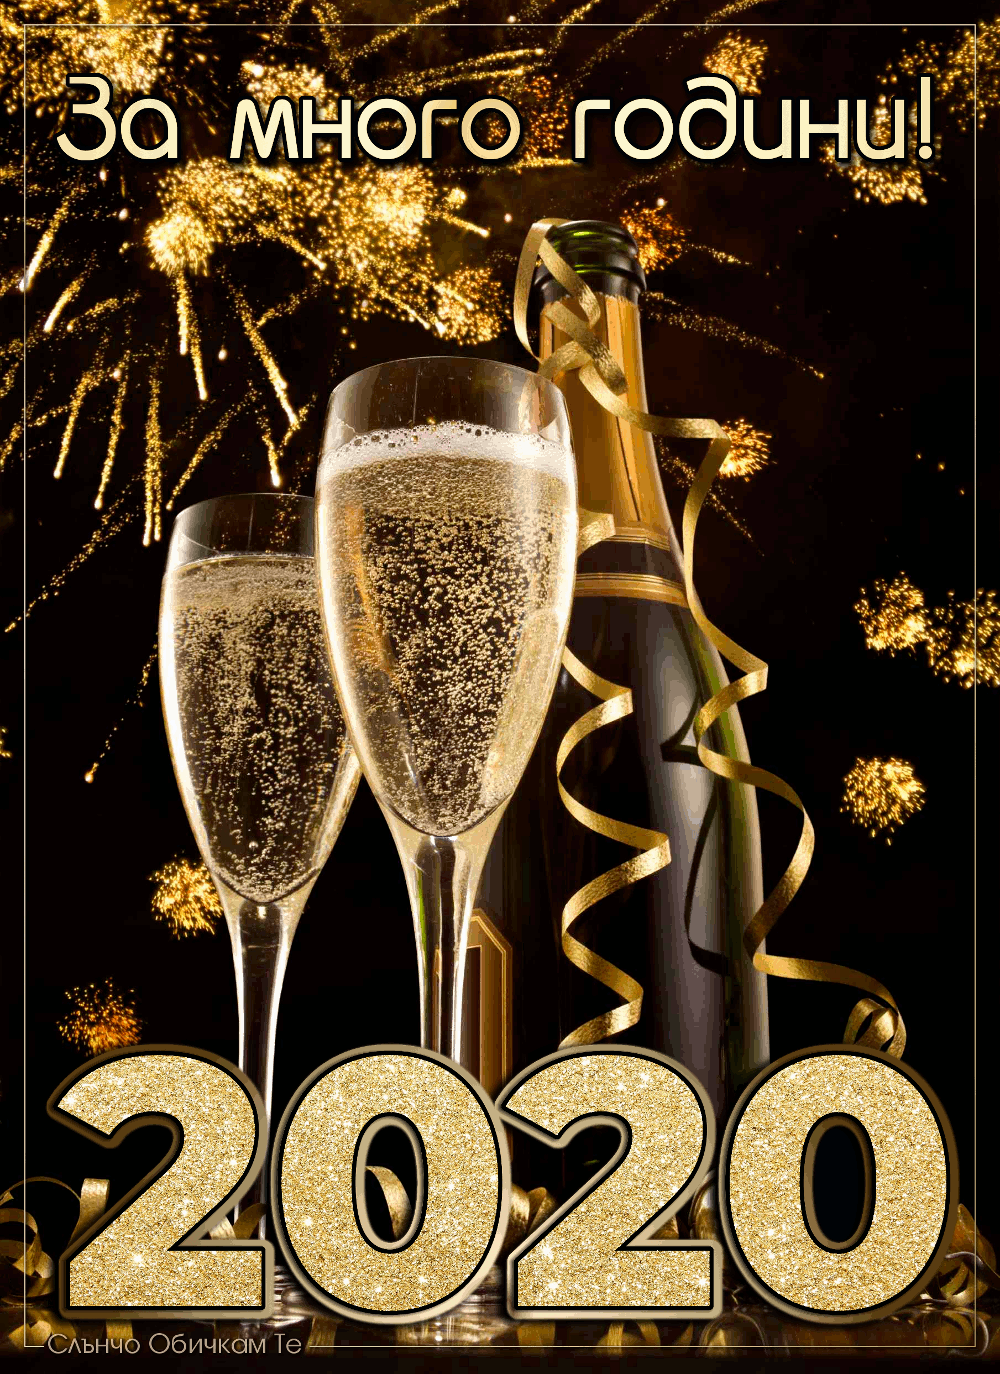 За много години! Честита Нова Година! - Пожелания за нова година 2020, картички за нова година, честита 2020, анимация за нова година, гиф, gif